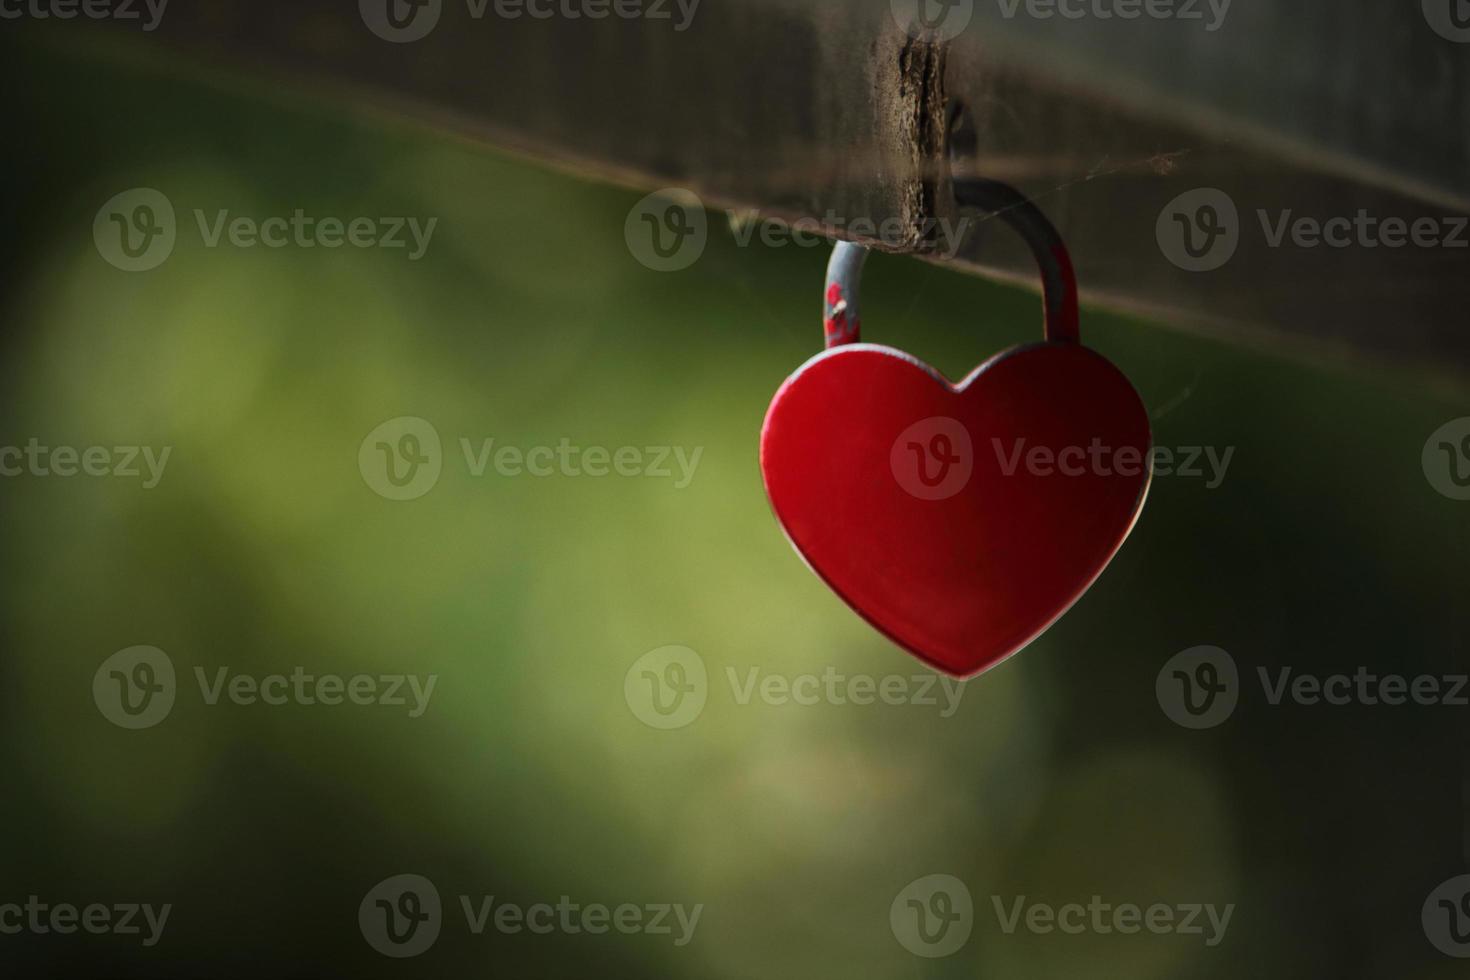 pequeno cadeado com coração vermelho pendurado no corrimão de uma ponte foto